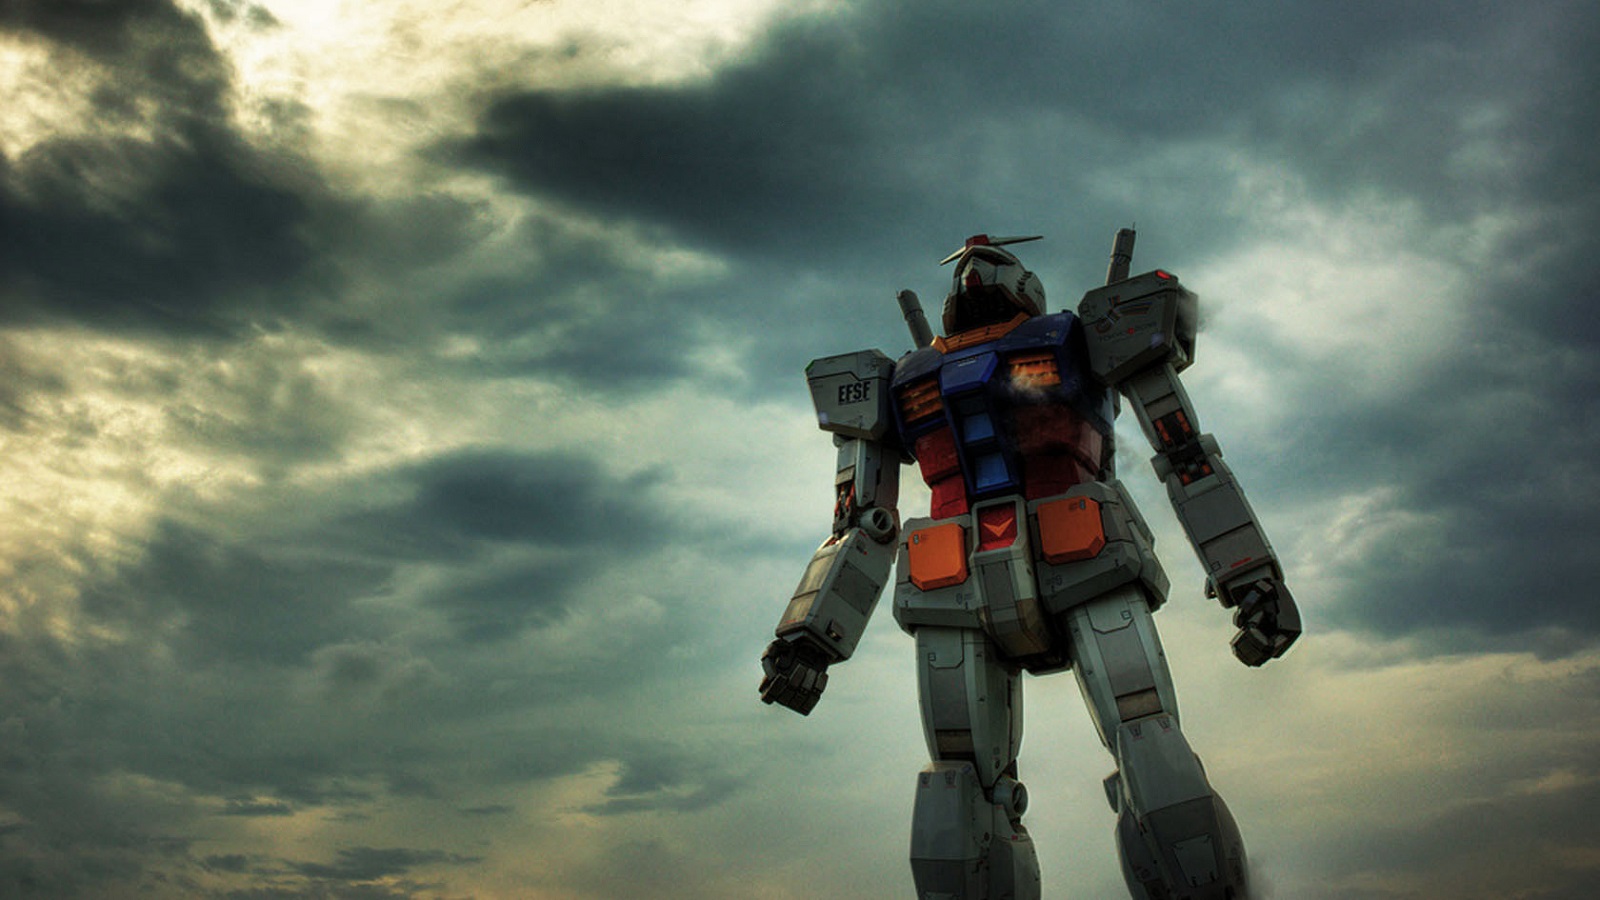 Wallpaper, RX 78 Gundam, clouds 1600x900